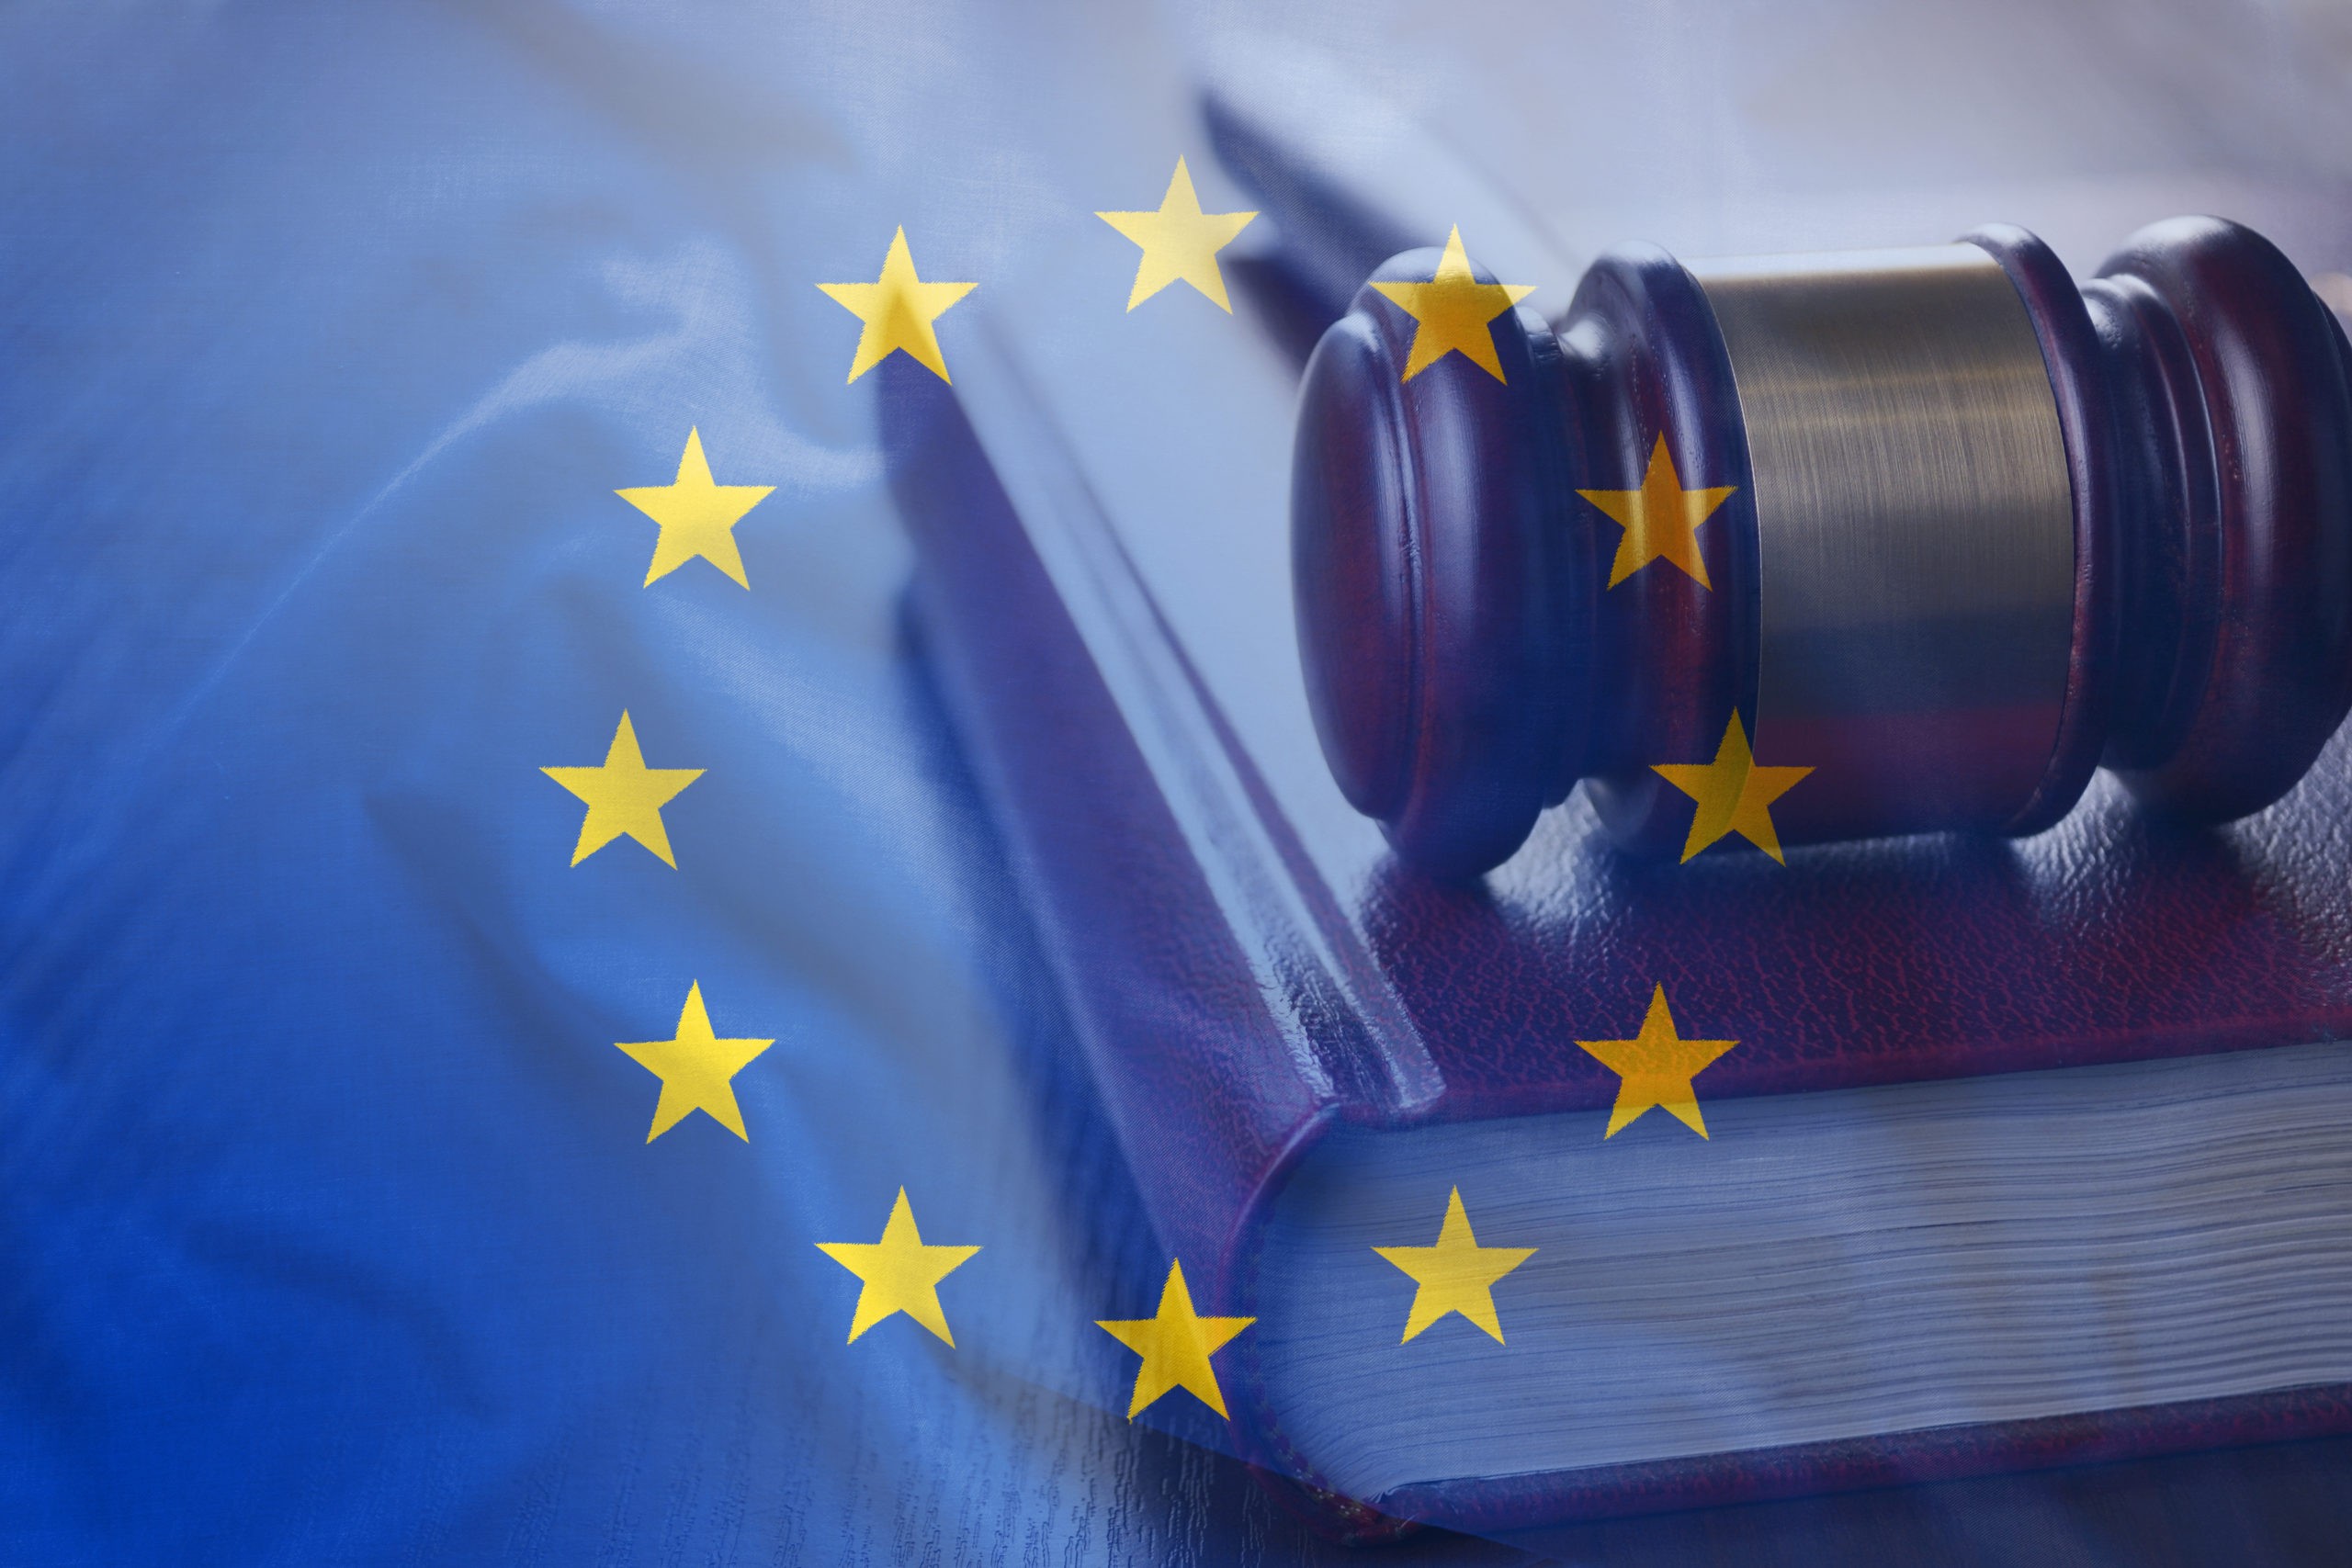 Transfert de données hors UE : l’interprofession engage une action en demande de conseil auprès de la CNIL